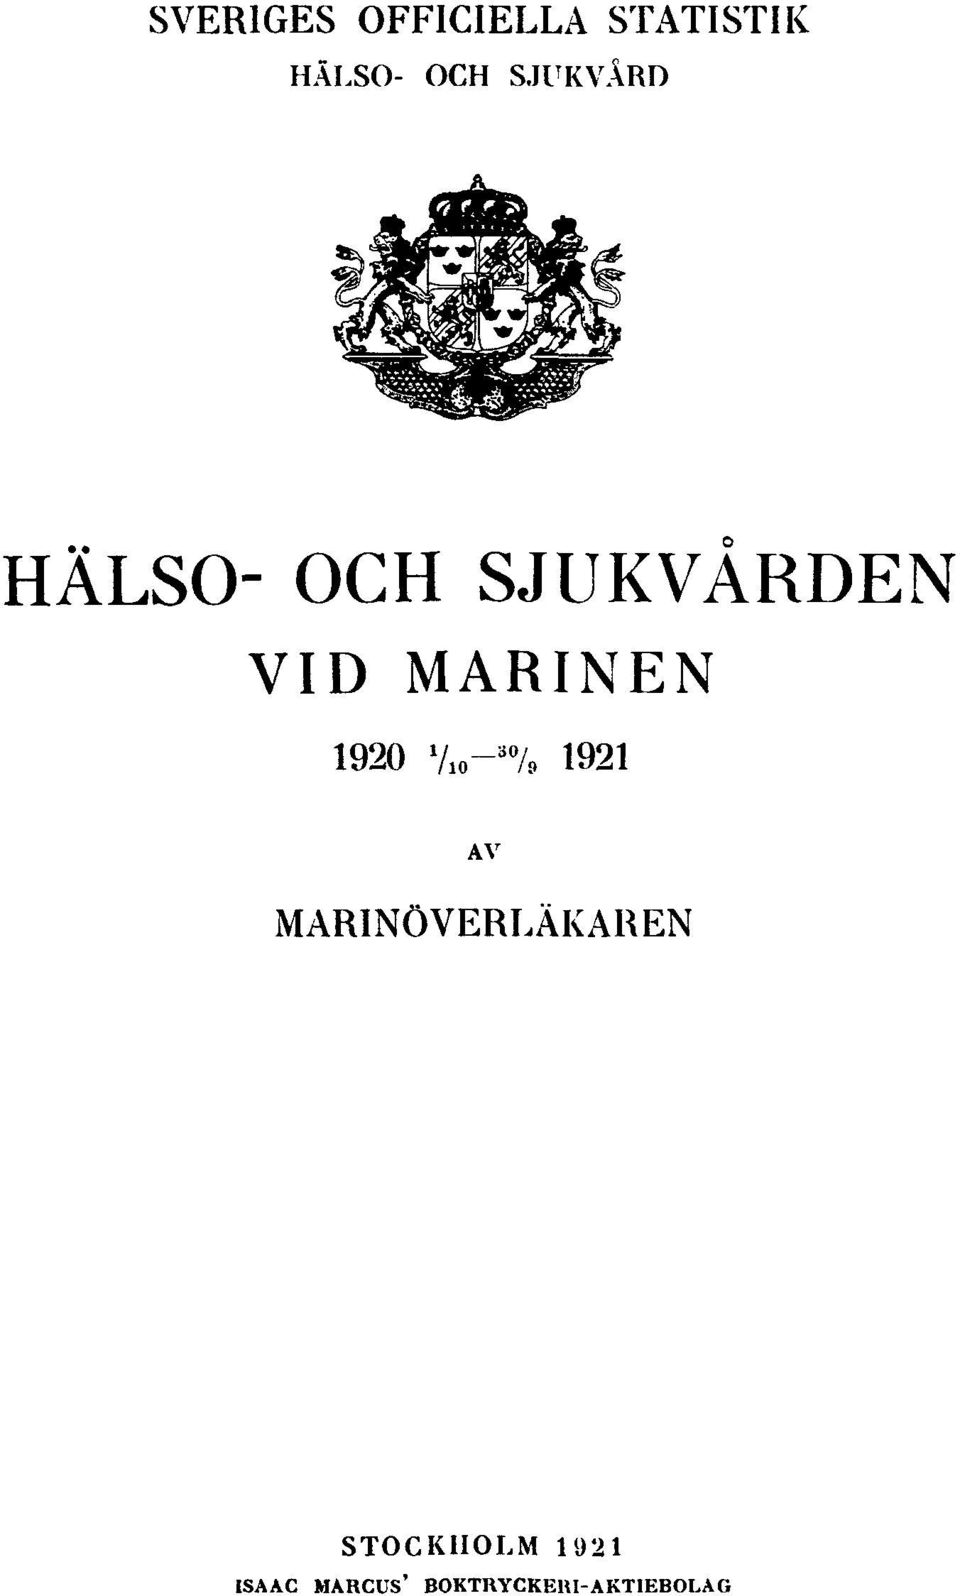 1920 1 / 10-30 / 9 1921 AV MARINÖVERLÄKAREN